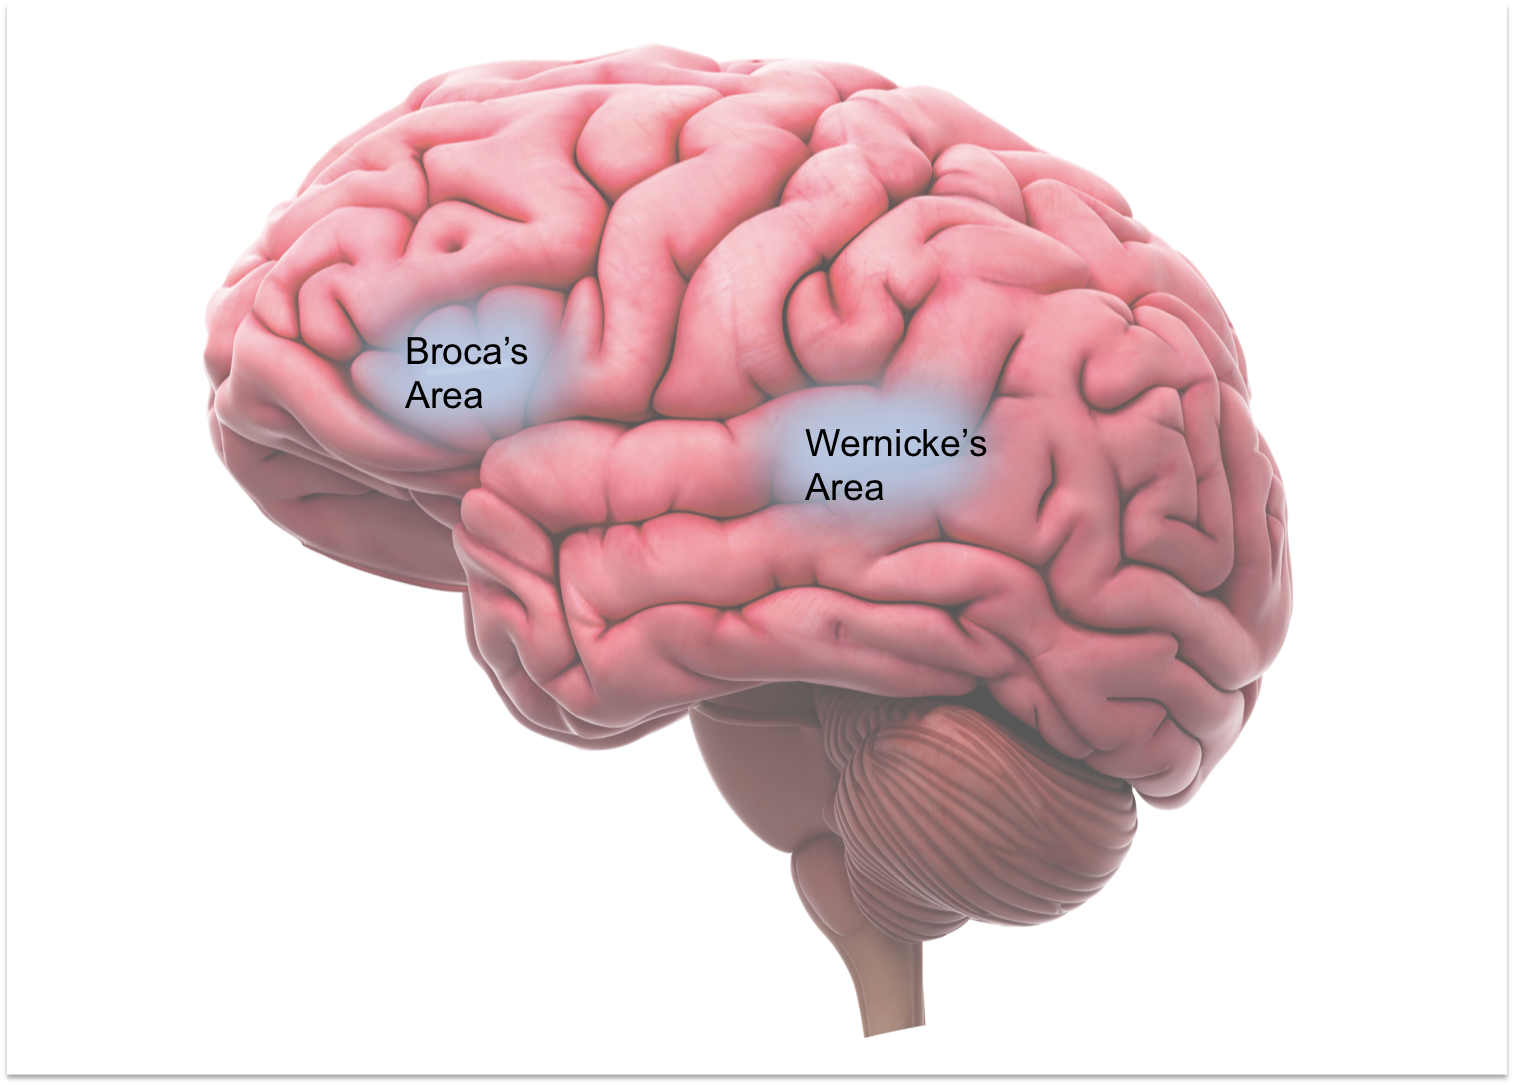 Speech brain. Зона Брока и Вернике. Зона Вернике. Язык и мозг. Мозг и речь.